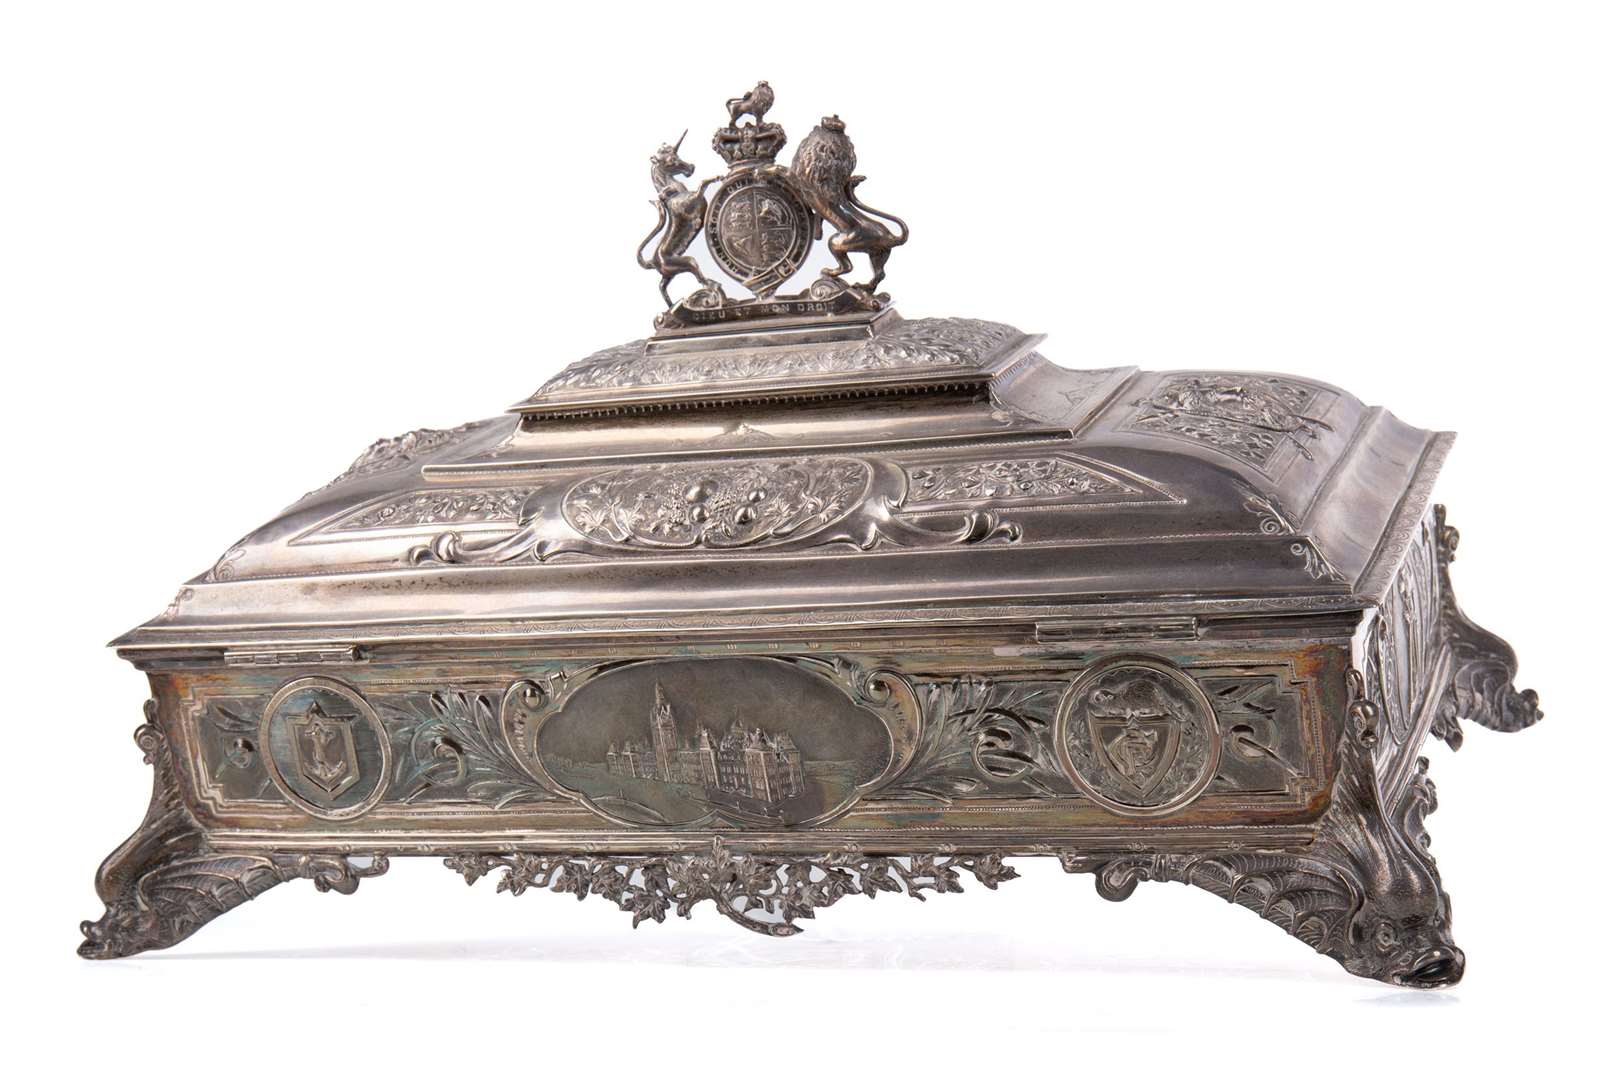 The mallet is kept in a silver casket (McTear’s/PA)